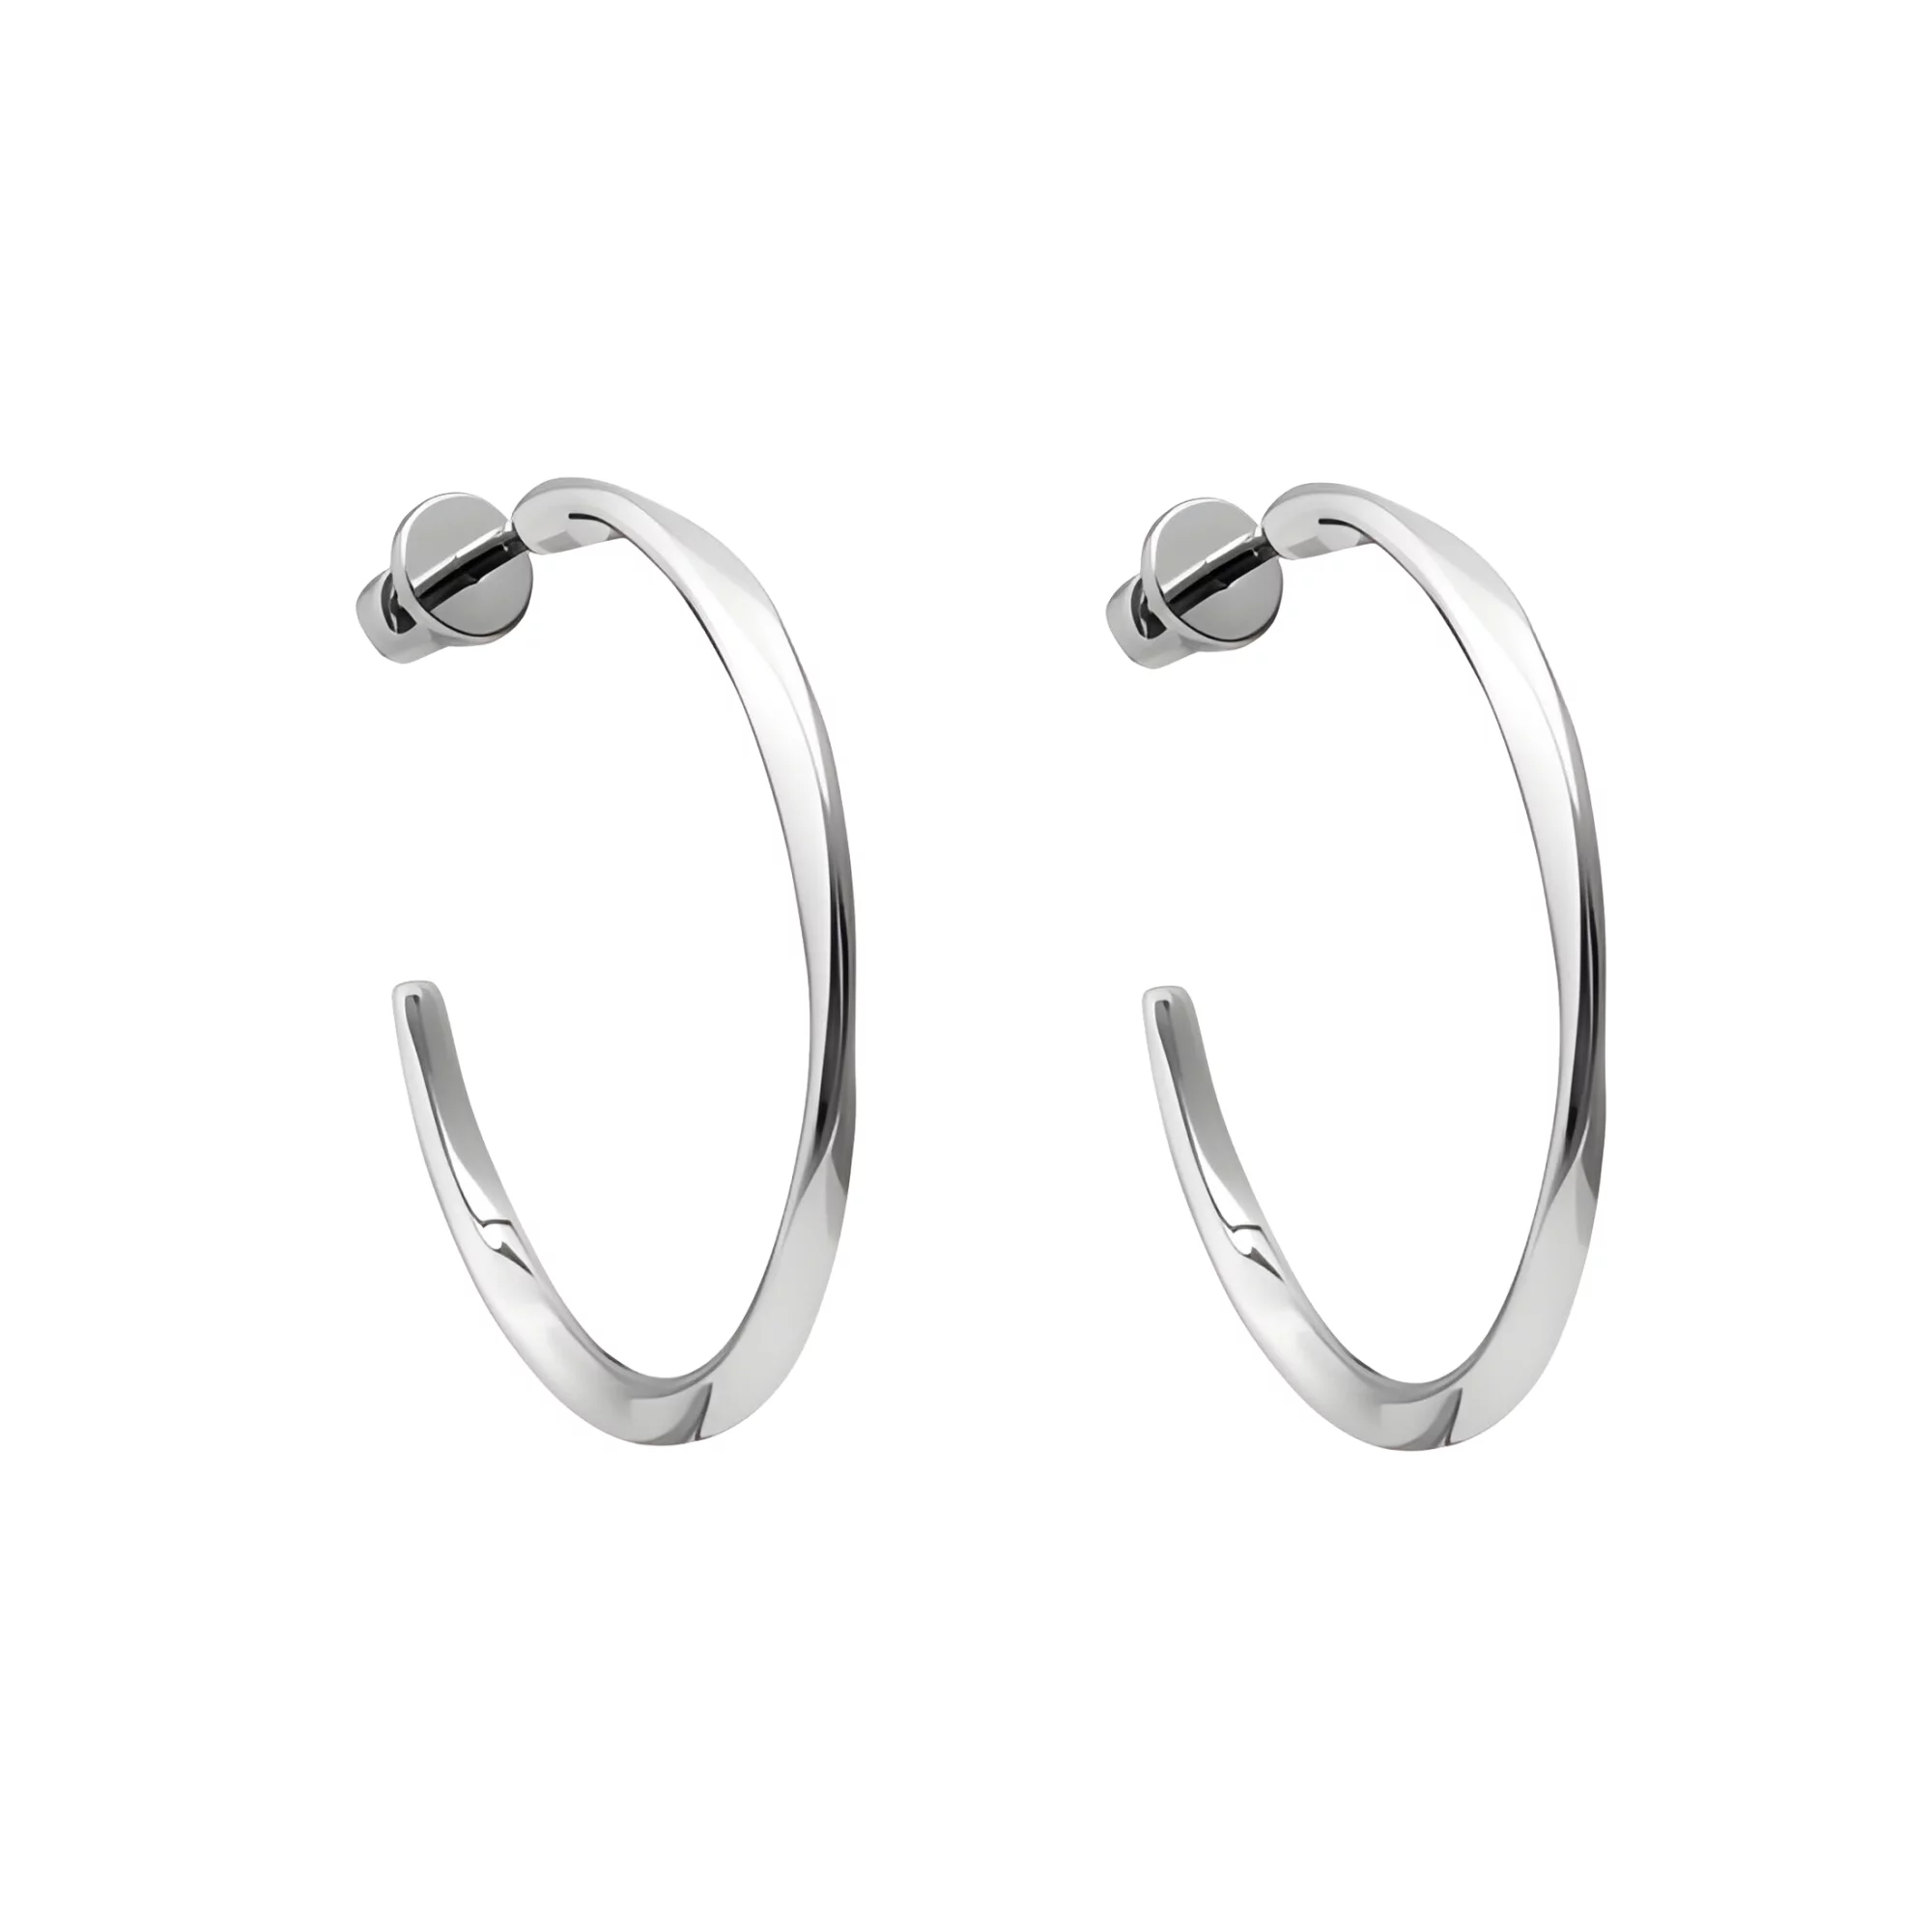 Срібні сережки-гвоздики у формі спіралі - 1553045 – зображення 1